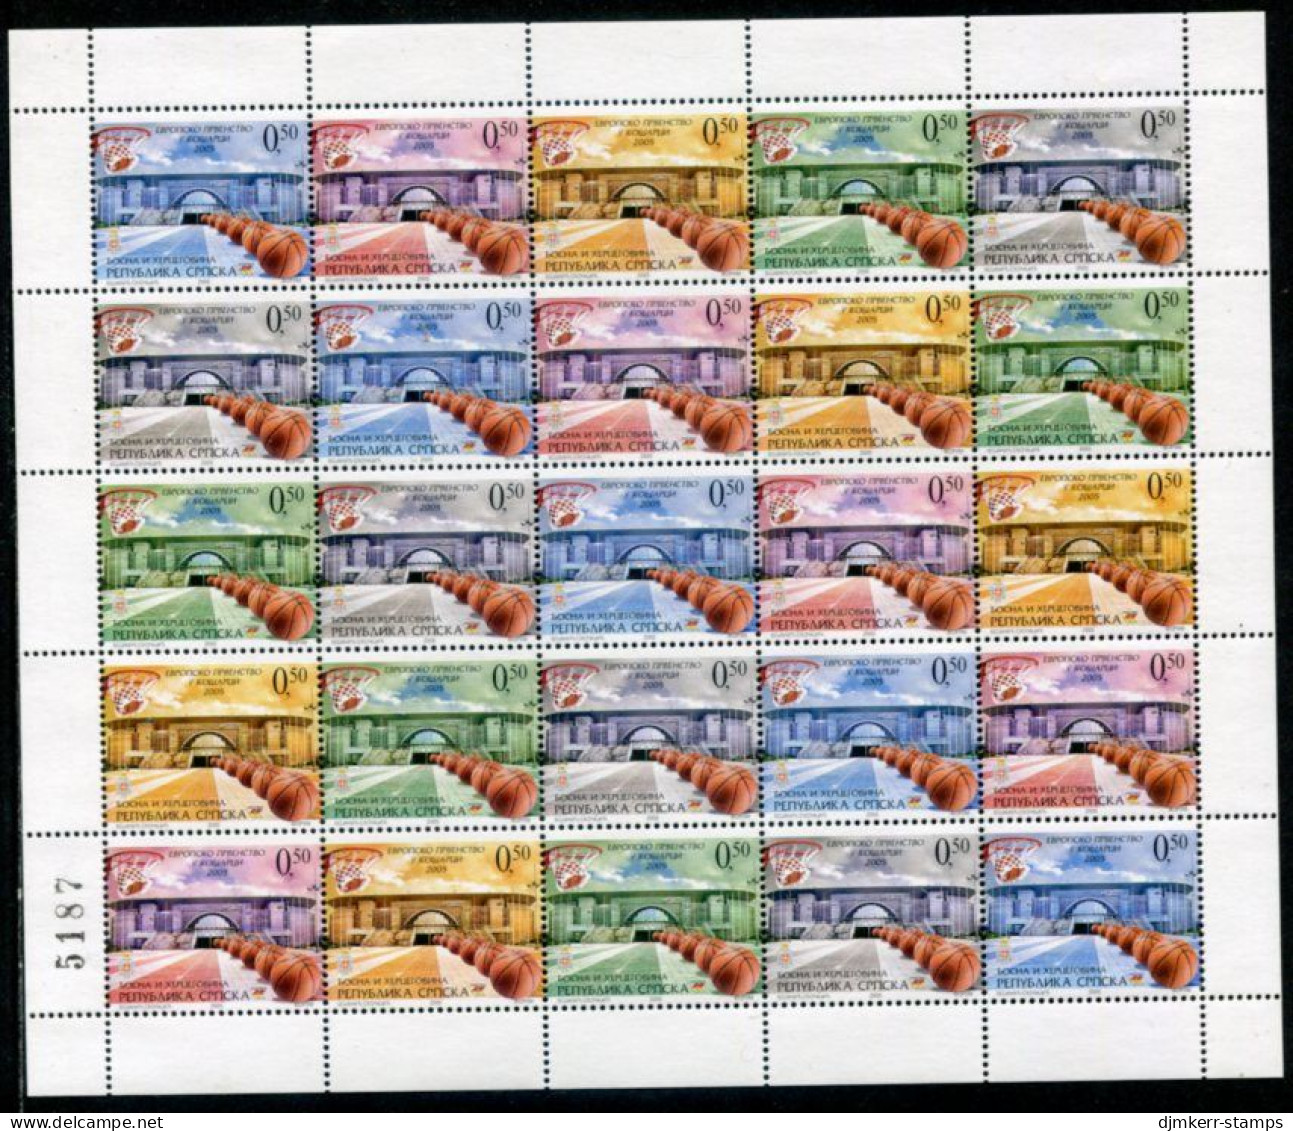 BOSNIAN SERB REPUBLIC 2005 Basketball Sheet With Artist's Initials NS On Stamp 18 MNH / **.  Michel 343-47 - Bosnië En Herzegovina